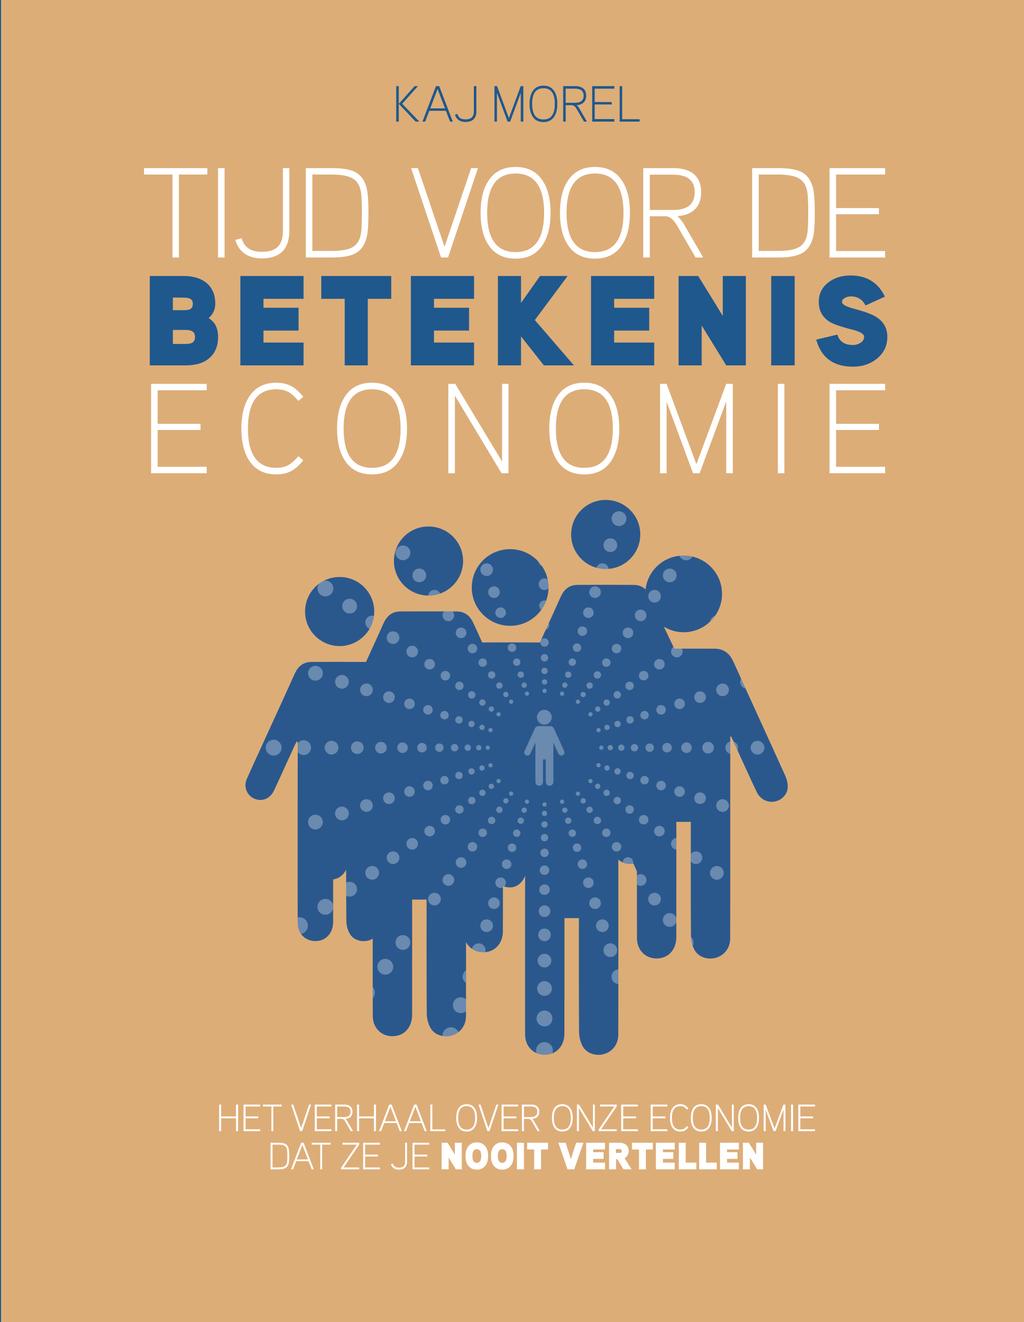 Hij is medeoprichter en bestuurslid van de Stichting Betekeniseconomie in Twente. In 2010 verscheen zijn boek Identiteitsmarketing.